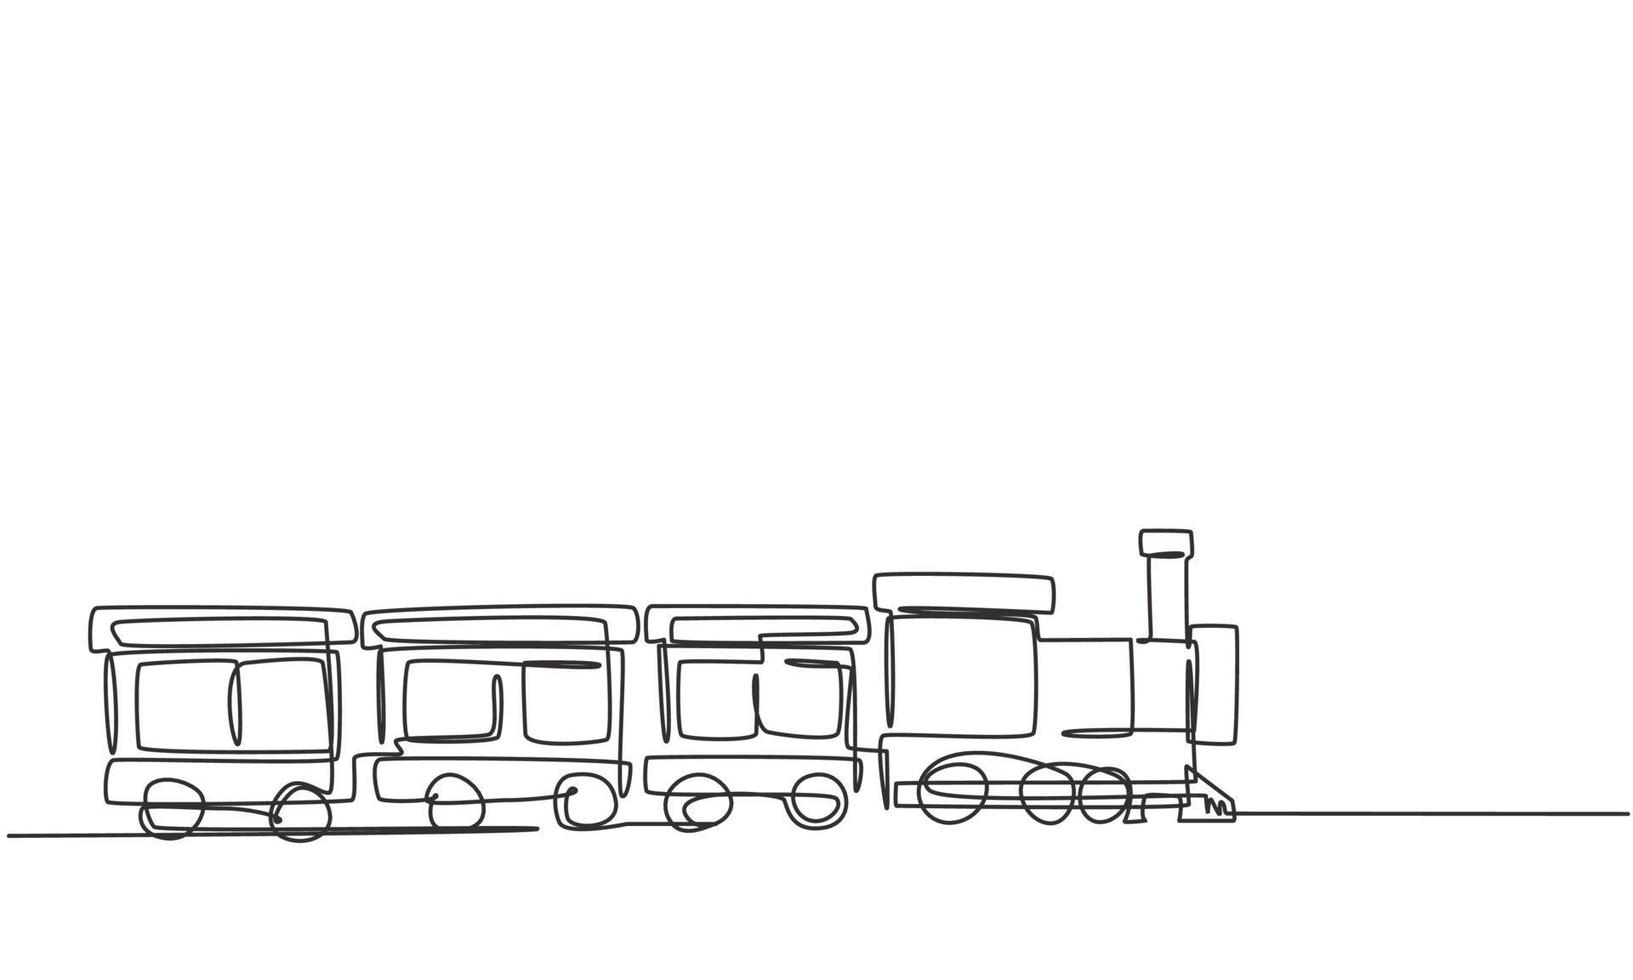 enkele lijntekening van een treinlocomotief met drie rijtuigen in de vorm van een rondzwervend stoomsysteem in een pretpark om passagiers te vervoeren. een lijn tekenen ontwerp grafische vectorillustratie. vector